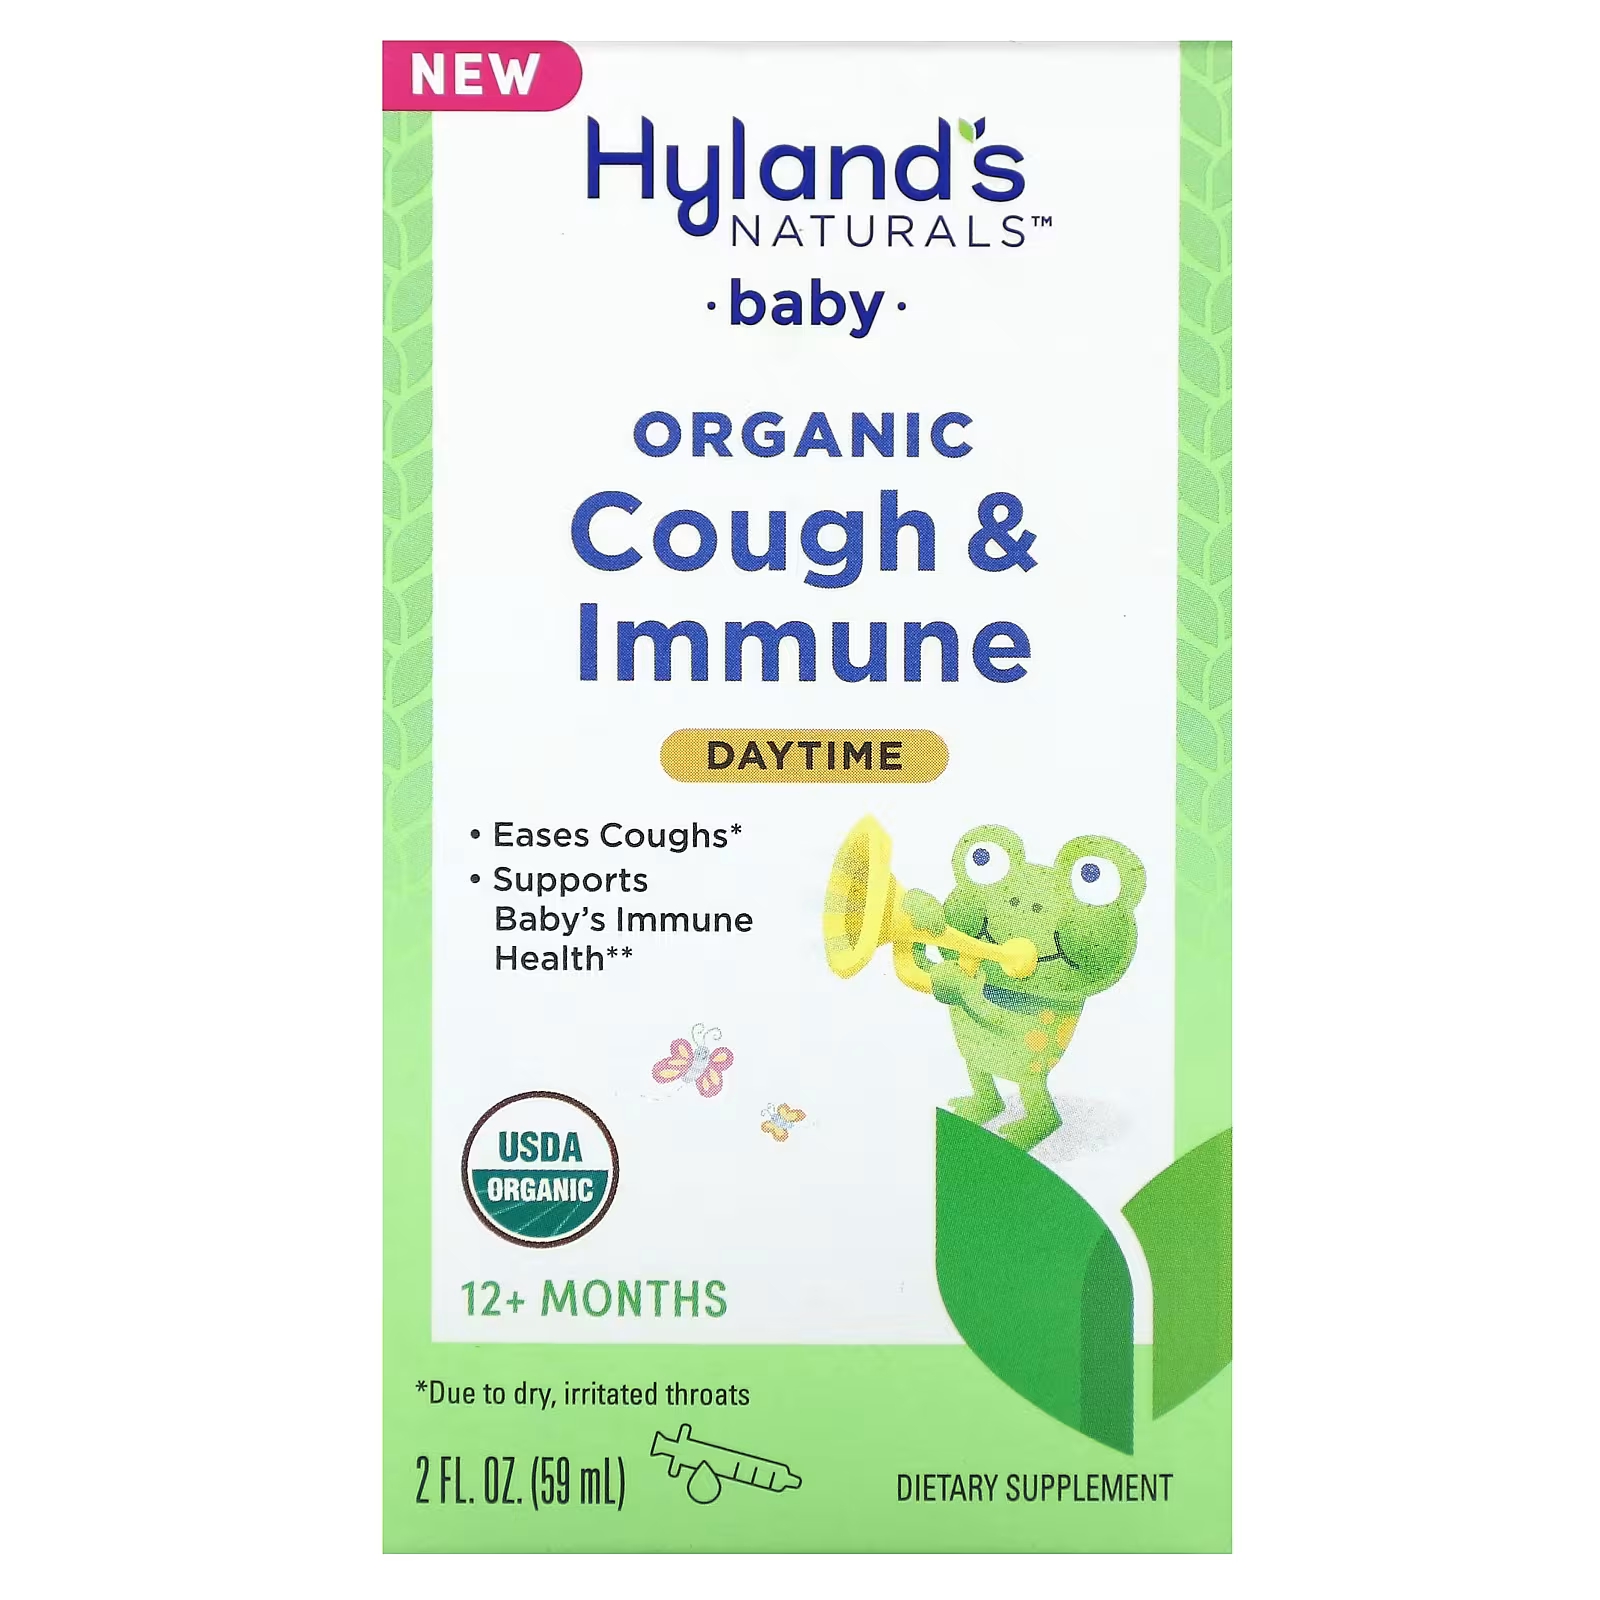 Средство от кашля детское Hyland's Naturals для детей от 12 месяцев, 59 мл